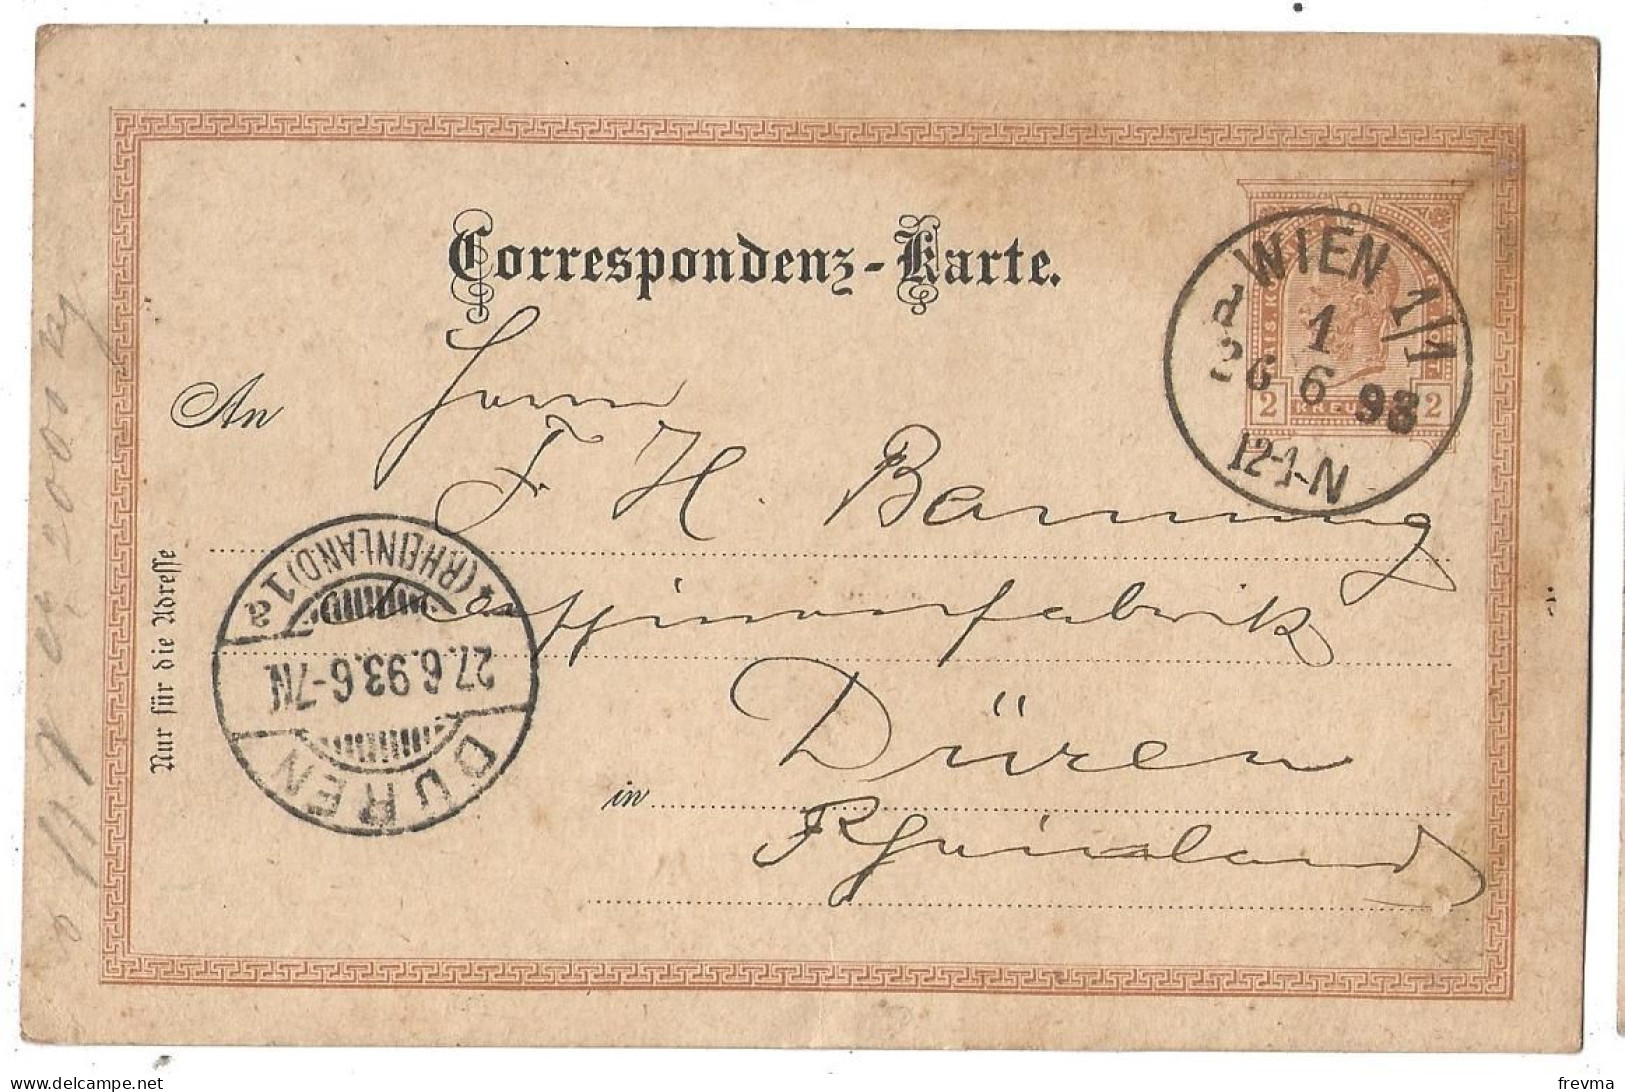 Entier Postaux Autriche Obliteration Duren Obliteration Wien 1898 - Kartenbriefe